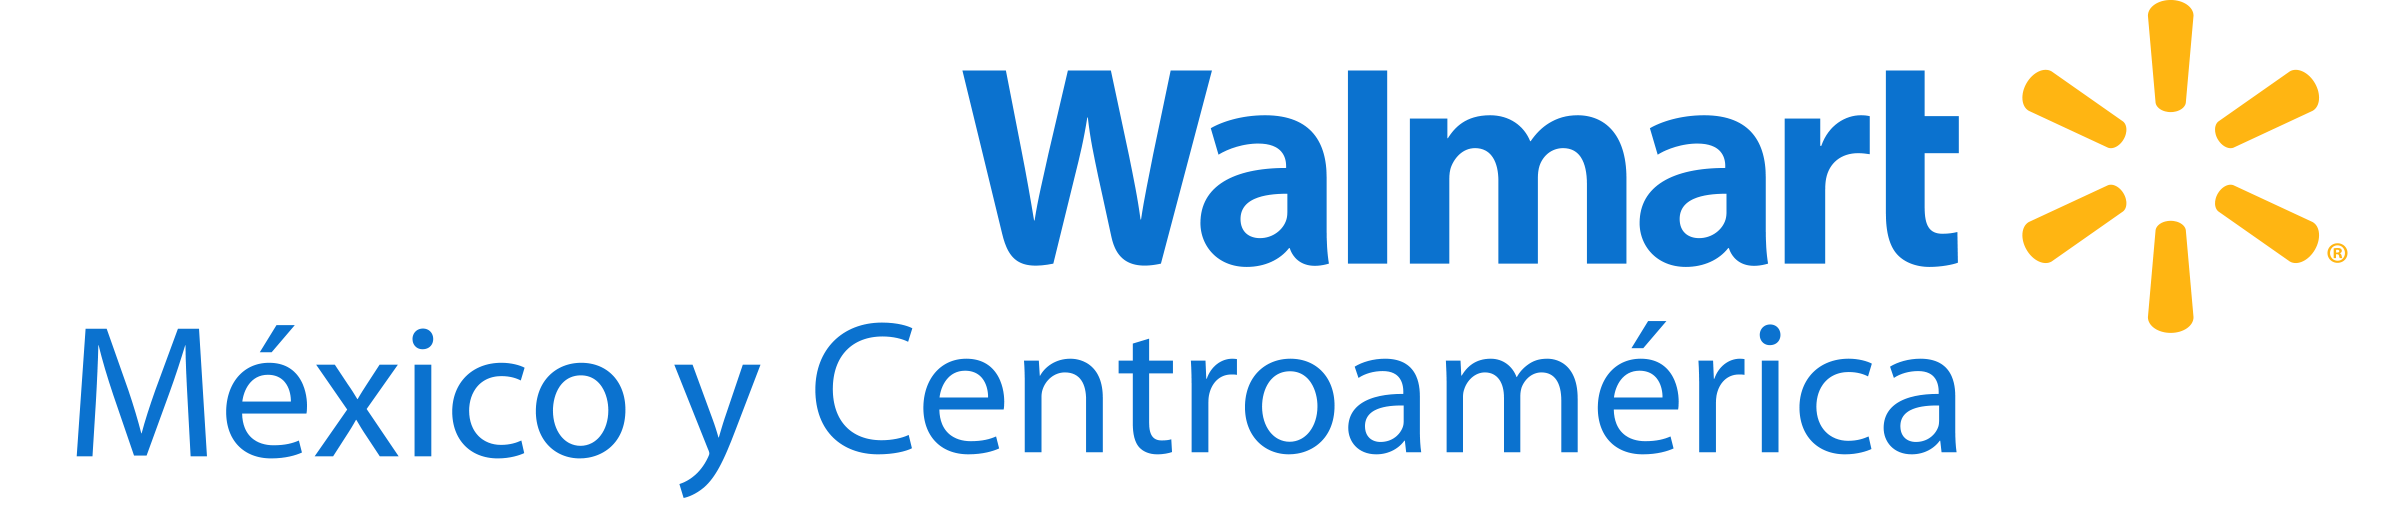 Walmaryt Logo - Walmart Supercenter Logo Png Image